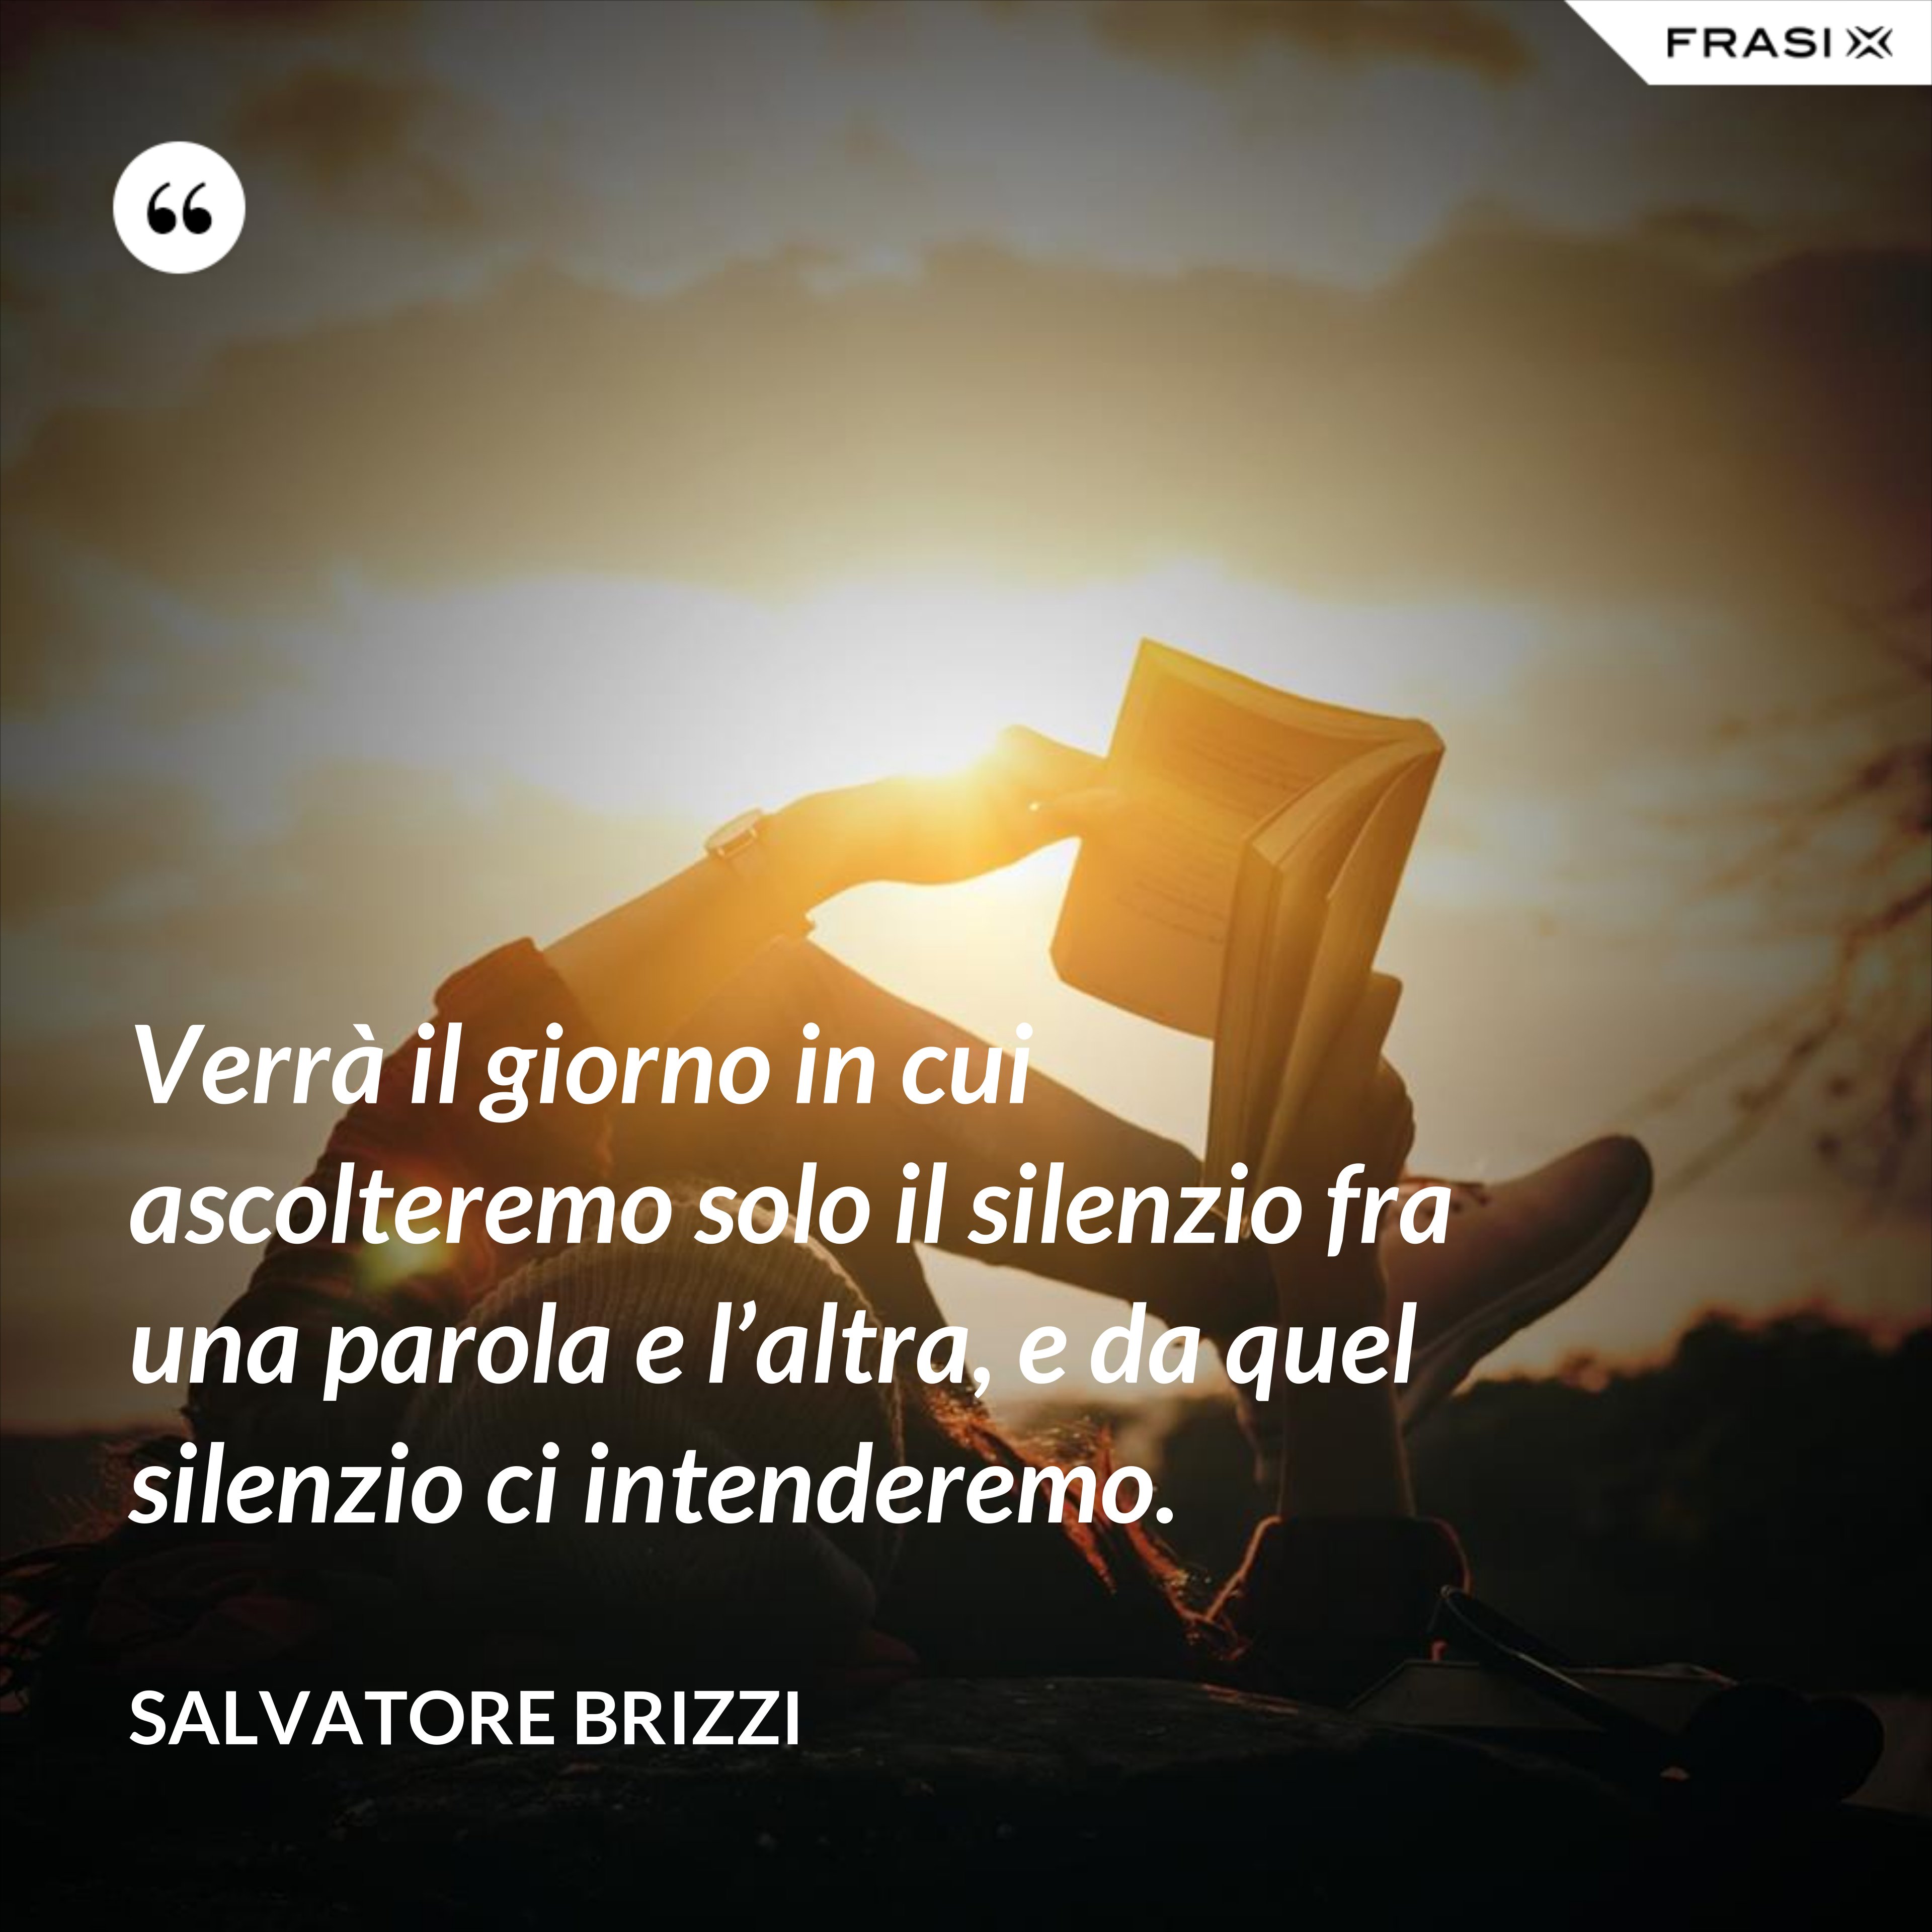 Verrà il giorno in cui ascolteremo solo il silenzio fra una parola e l’altra, e da quel silenzio ci intenderemo. - Salvatore Brizzi